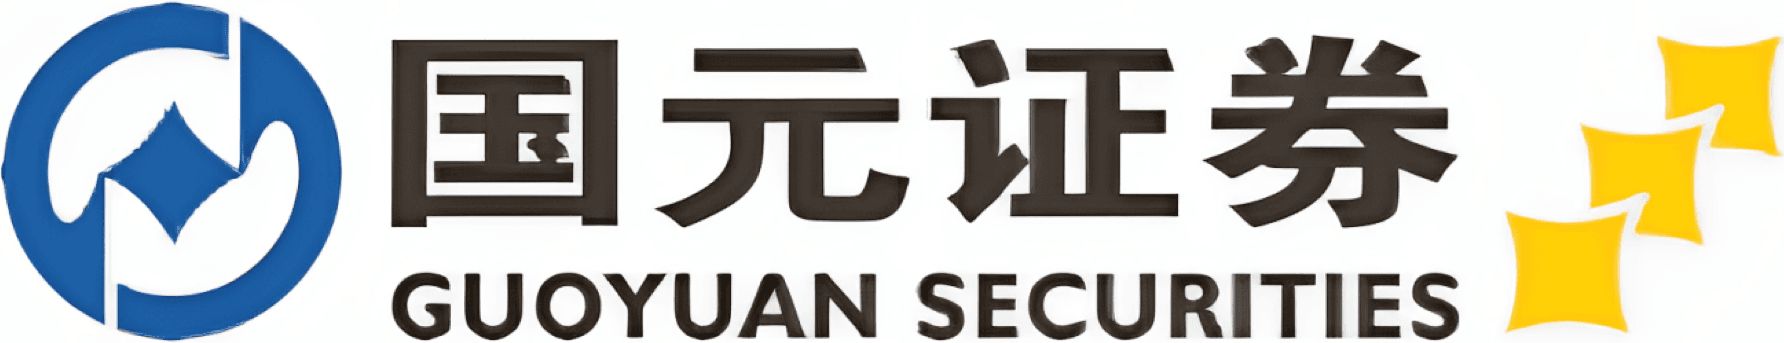 Guoyuan Securities